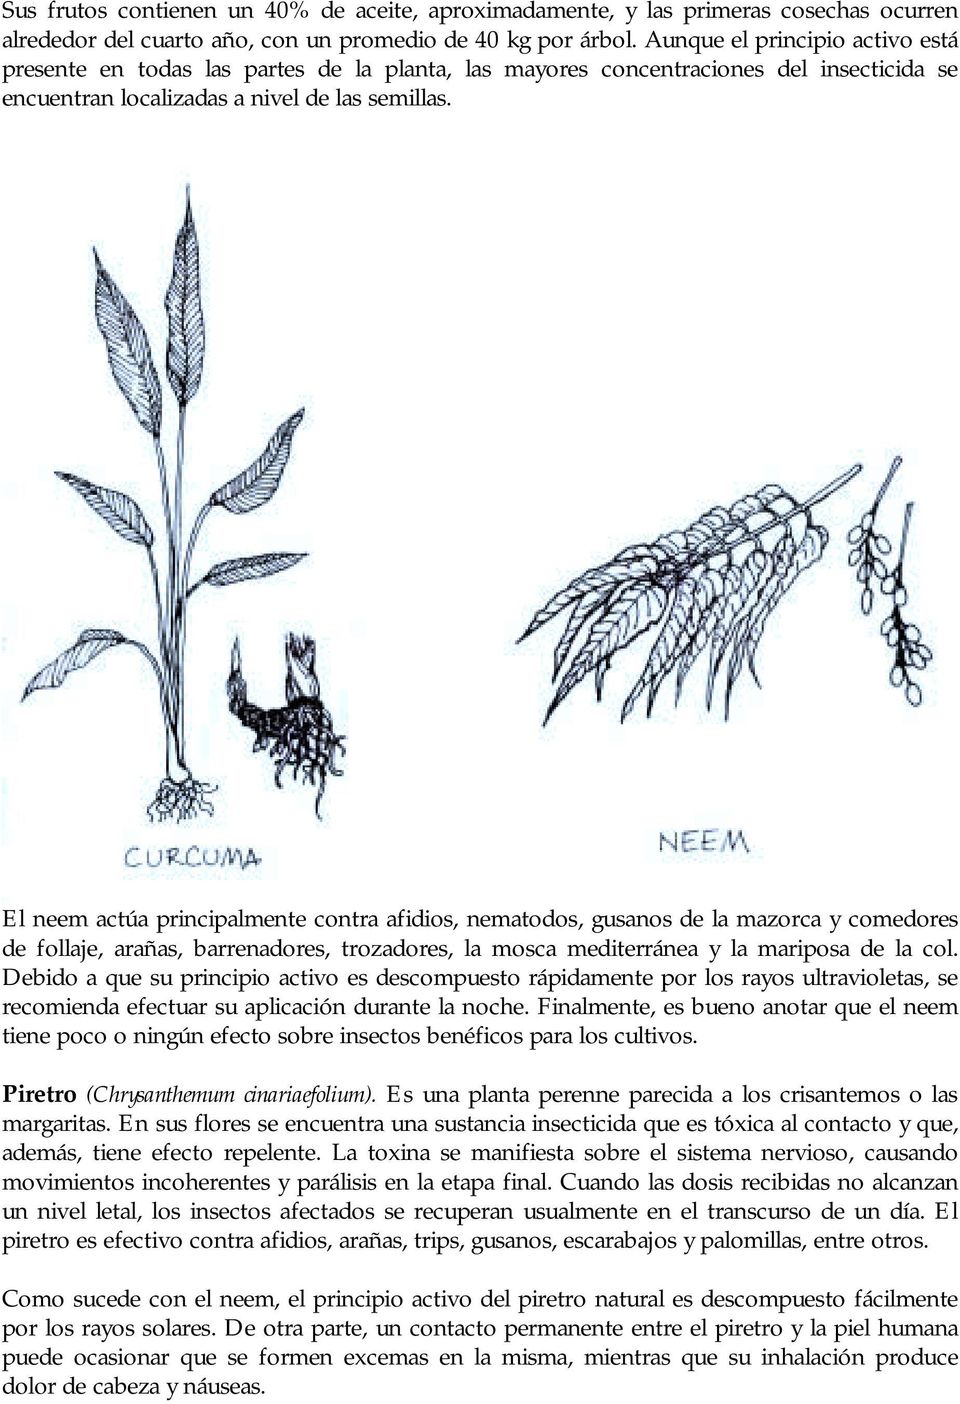 El neem actúa principalmente contra afidios, nematodos, gusanos de la mazorca y comedores de follaje, arañas, barrenadores, trozadores, la mosca mediterránea y la mariposa de la col.